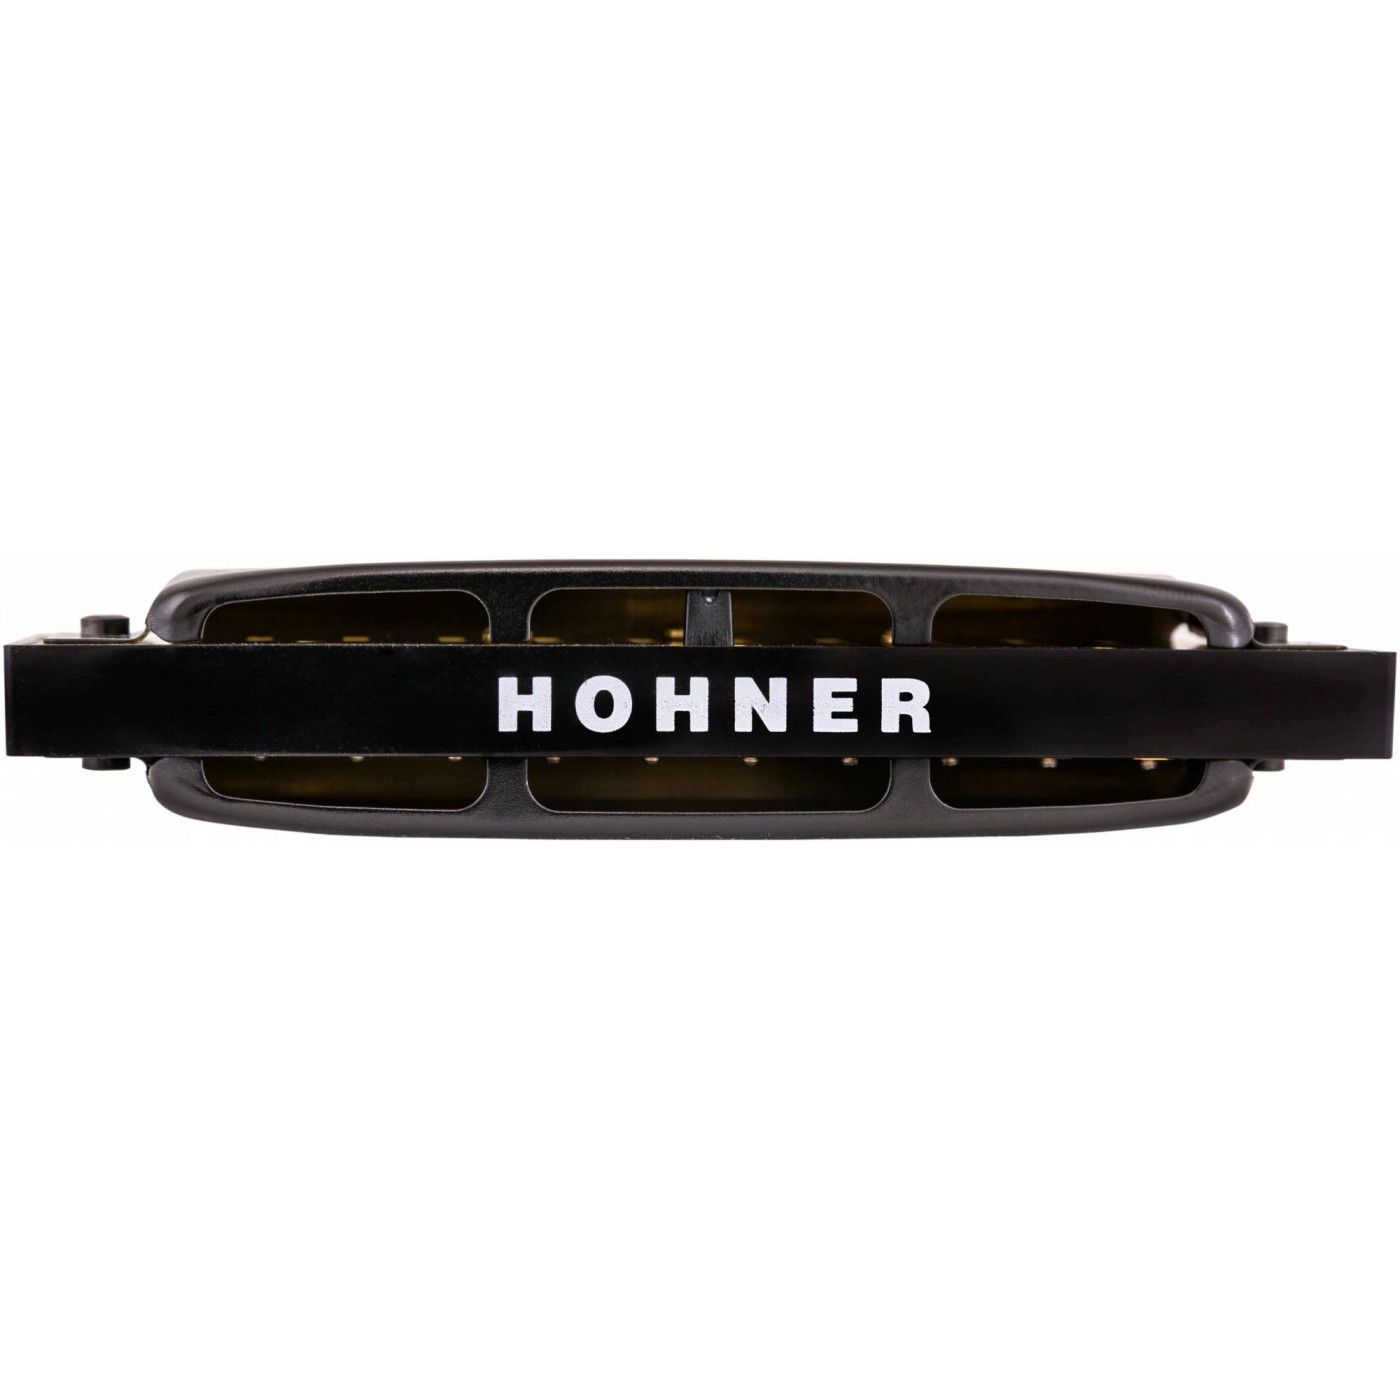 Детальная картинка товара Hohner Pro Harp 562/20 MS D в магазине Музыкальная Тема